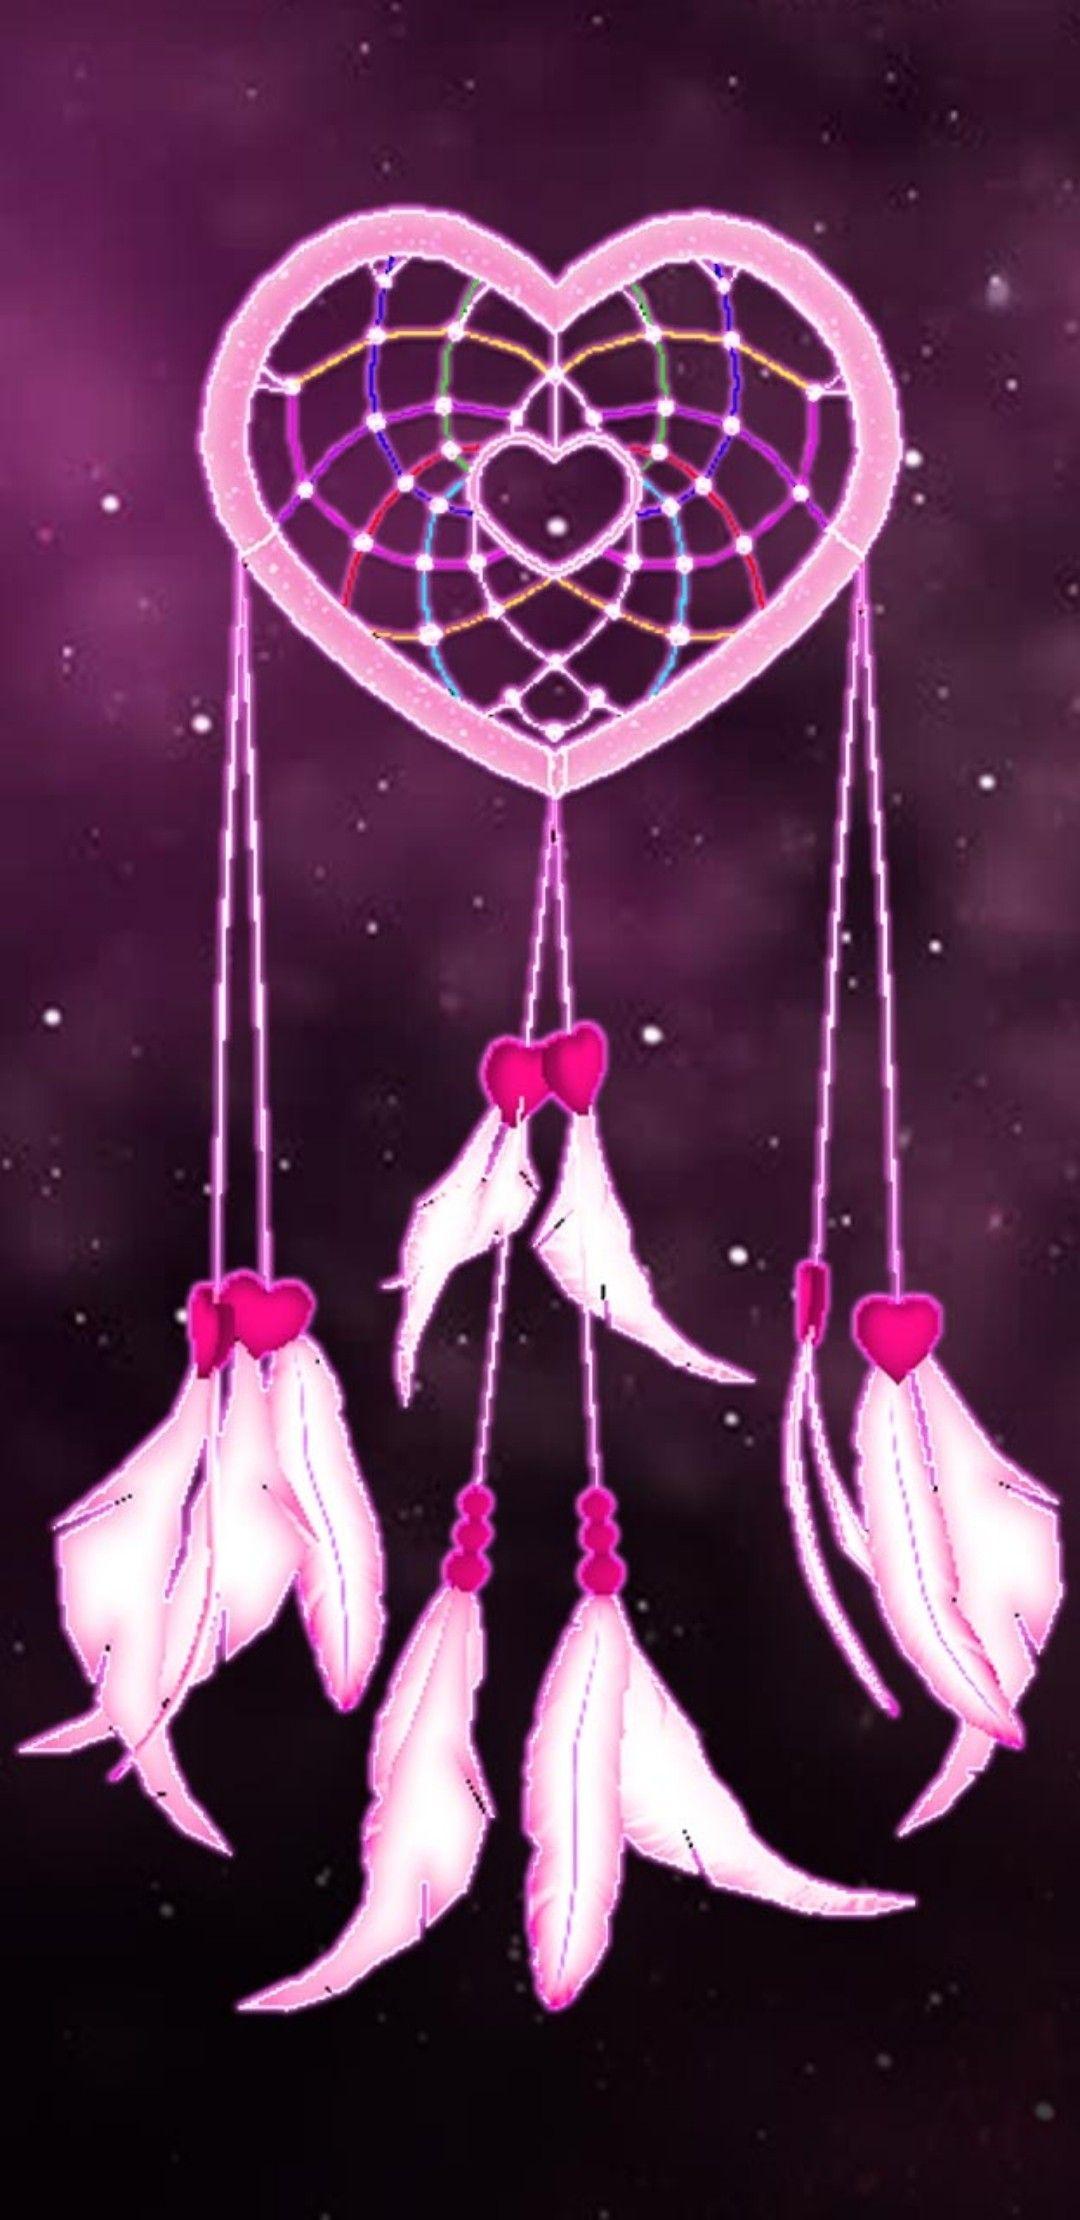 Black and pink dreamcatcher. Background. Dreamcatcher